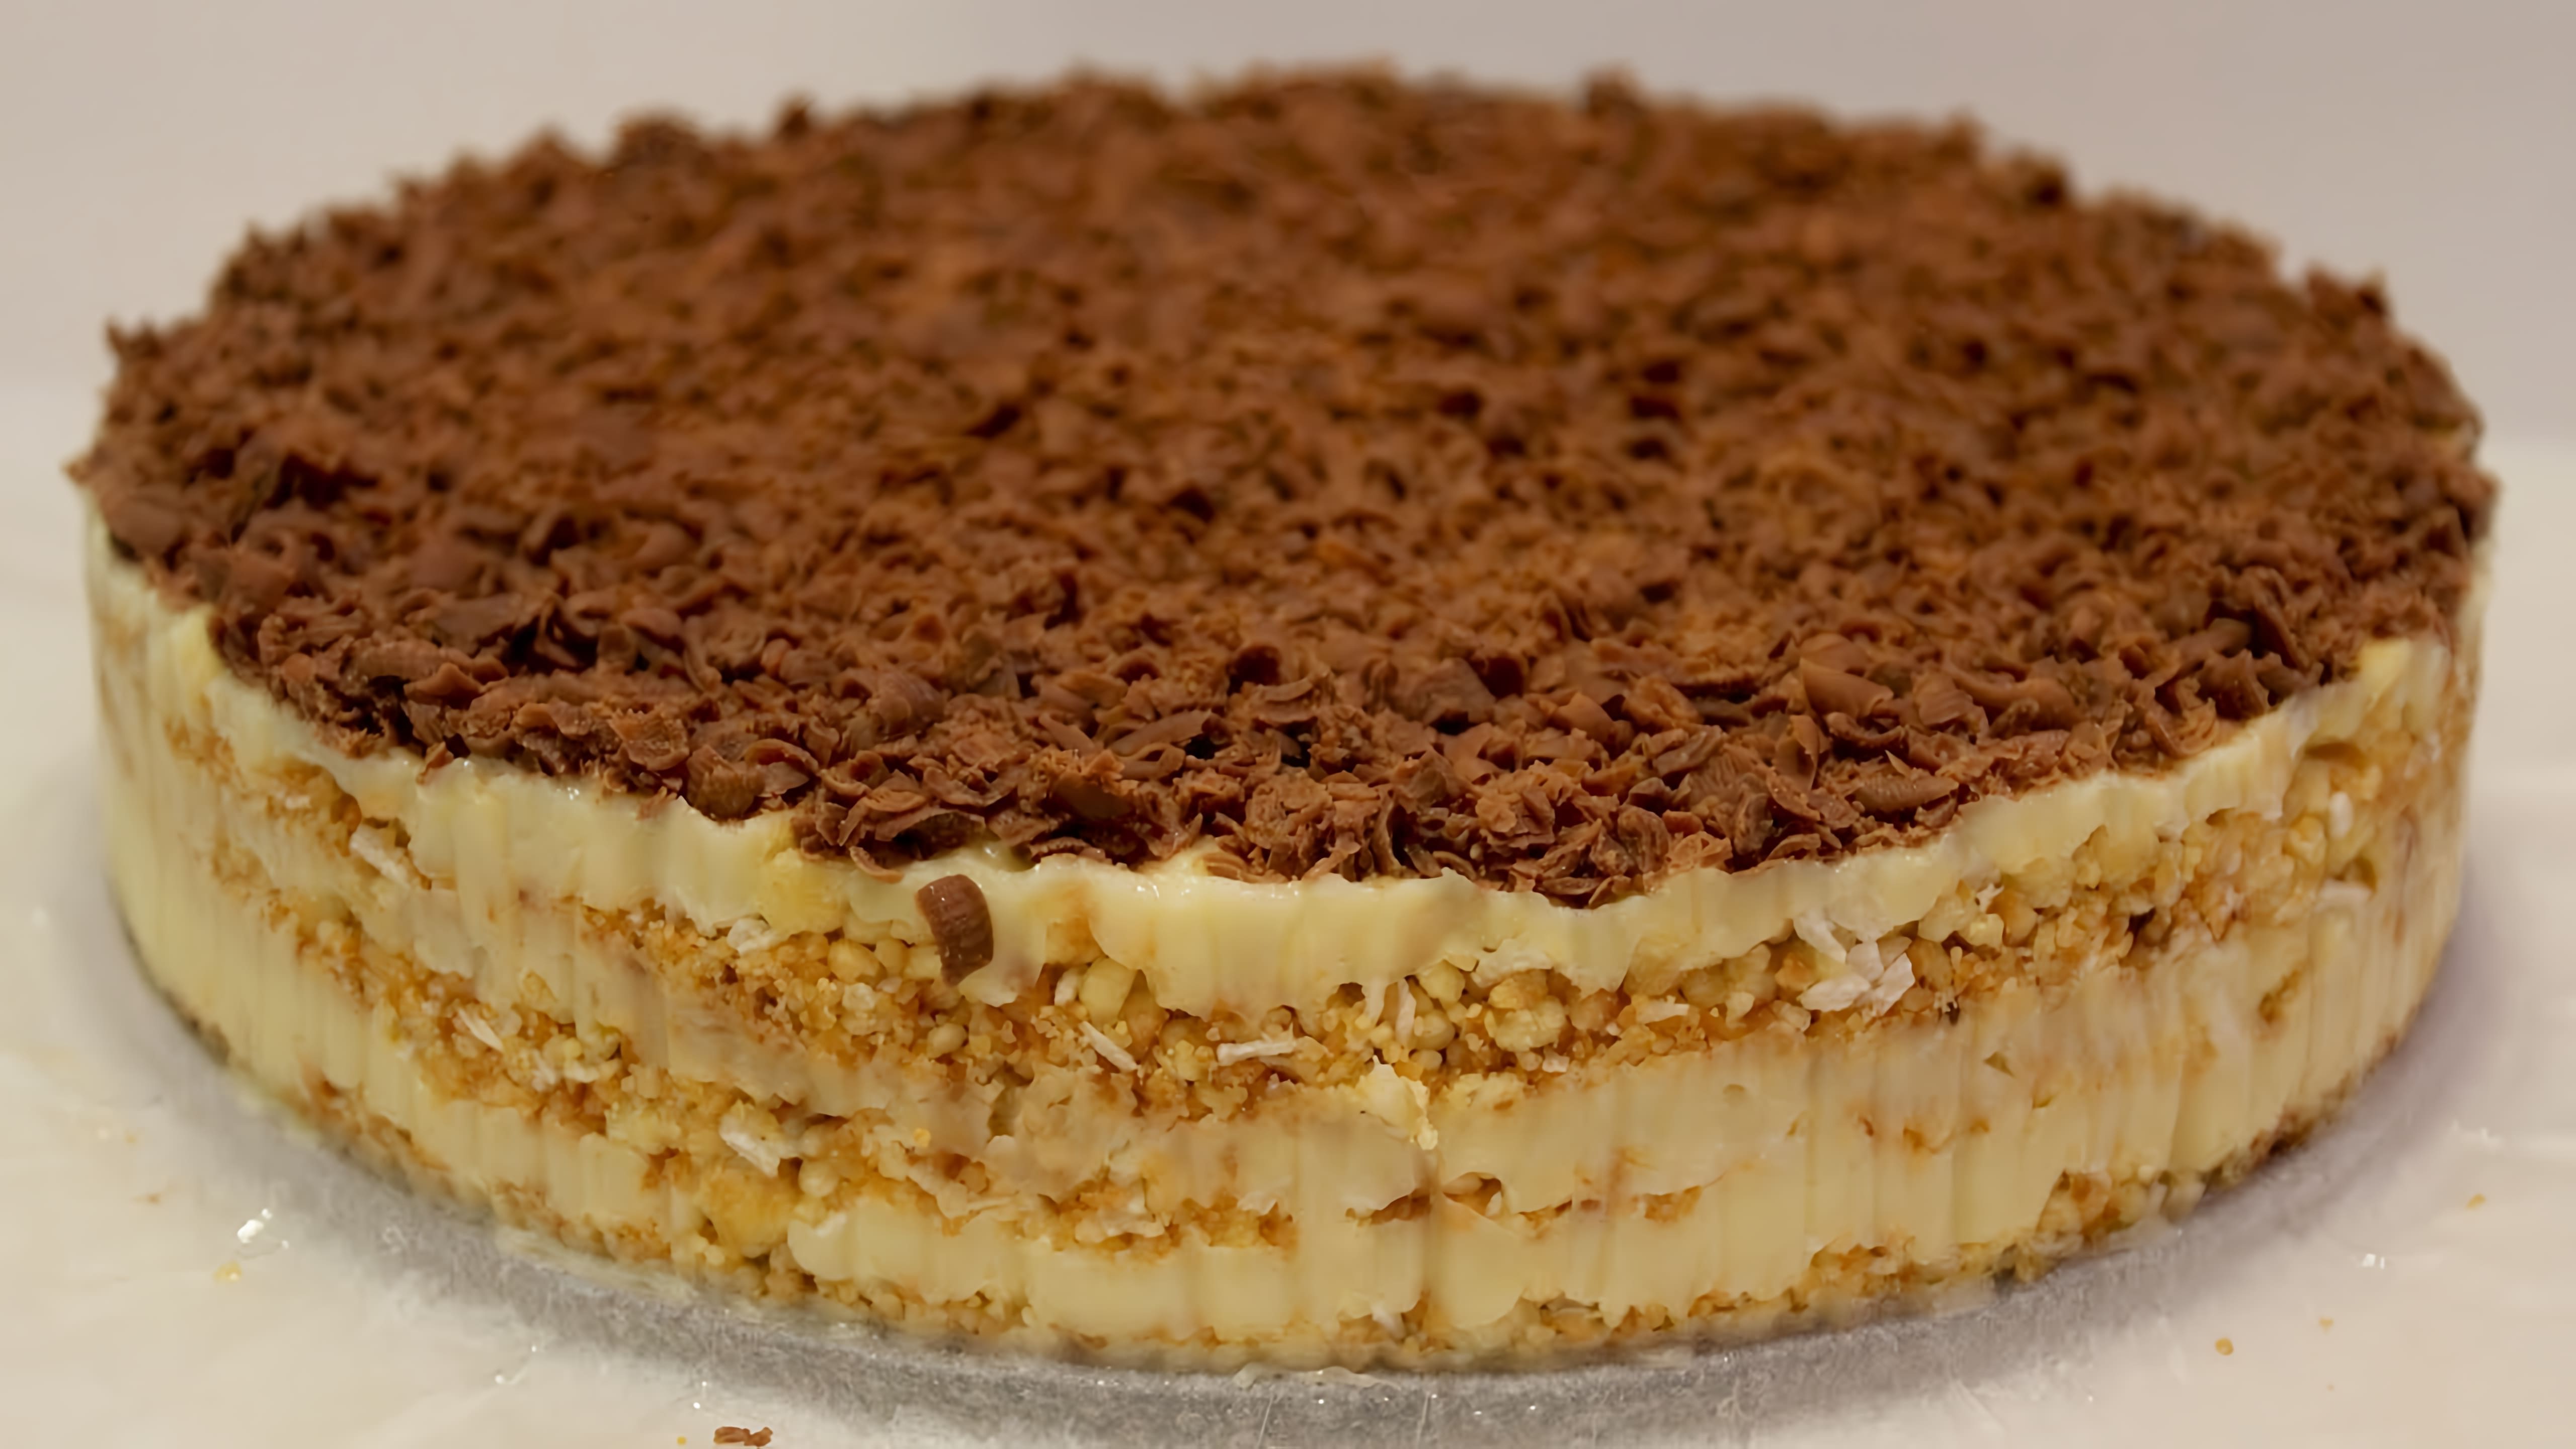 В этом видео демонстрируется рецепт ленивого торта "Наполеон", который готовится без духовки, без раскатки коржей и без использования печенья